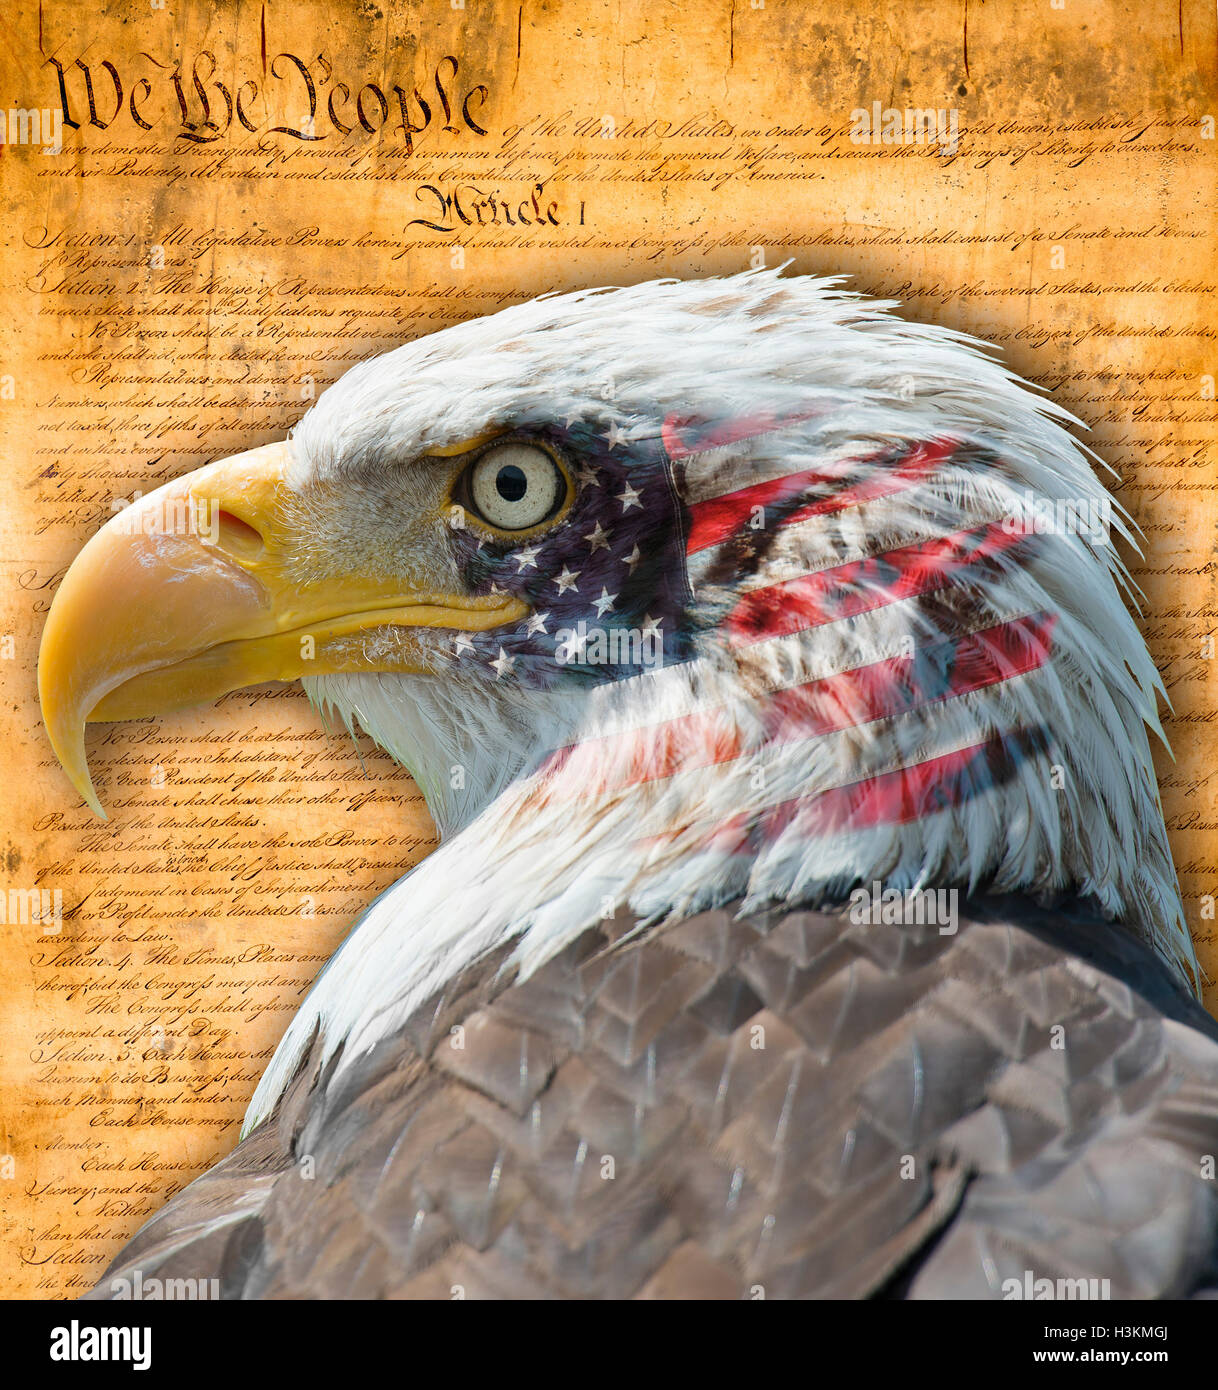 Bandera Americana con el águila calva y algunos documentos históricos Foto de stock